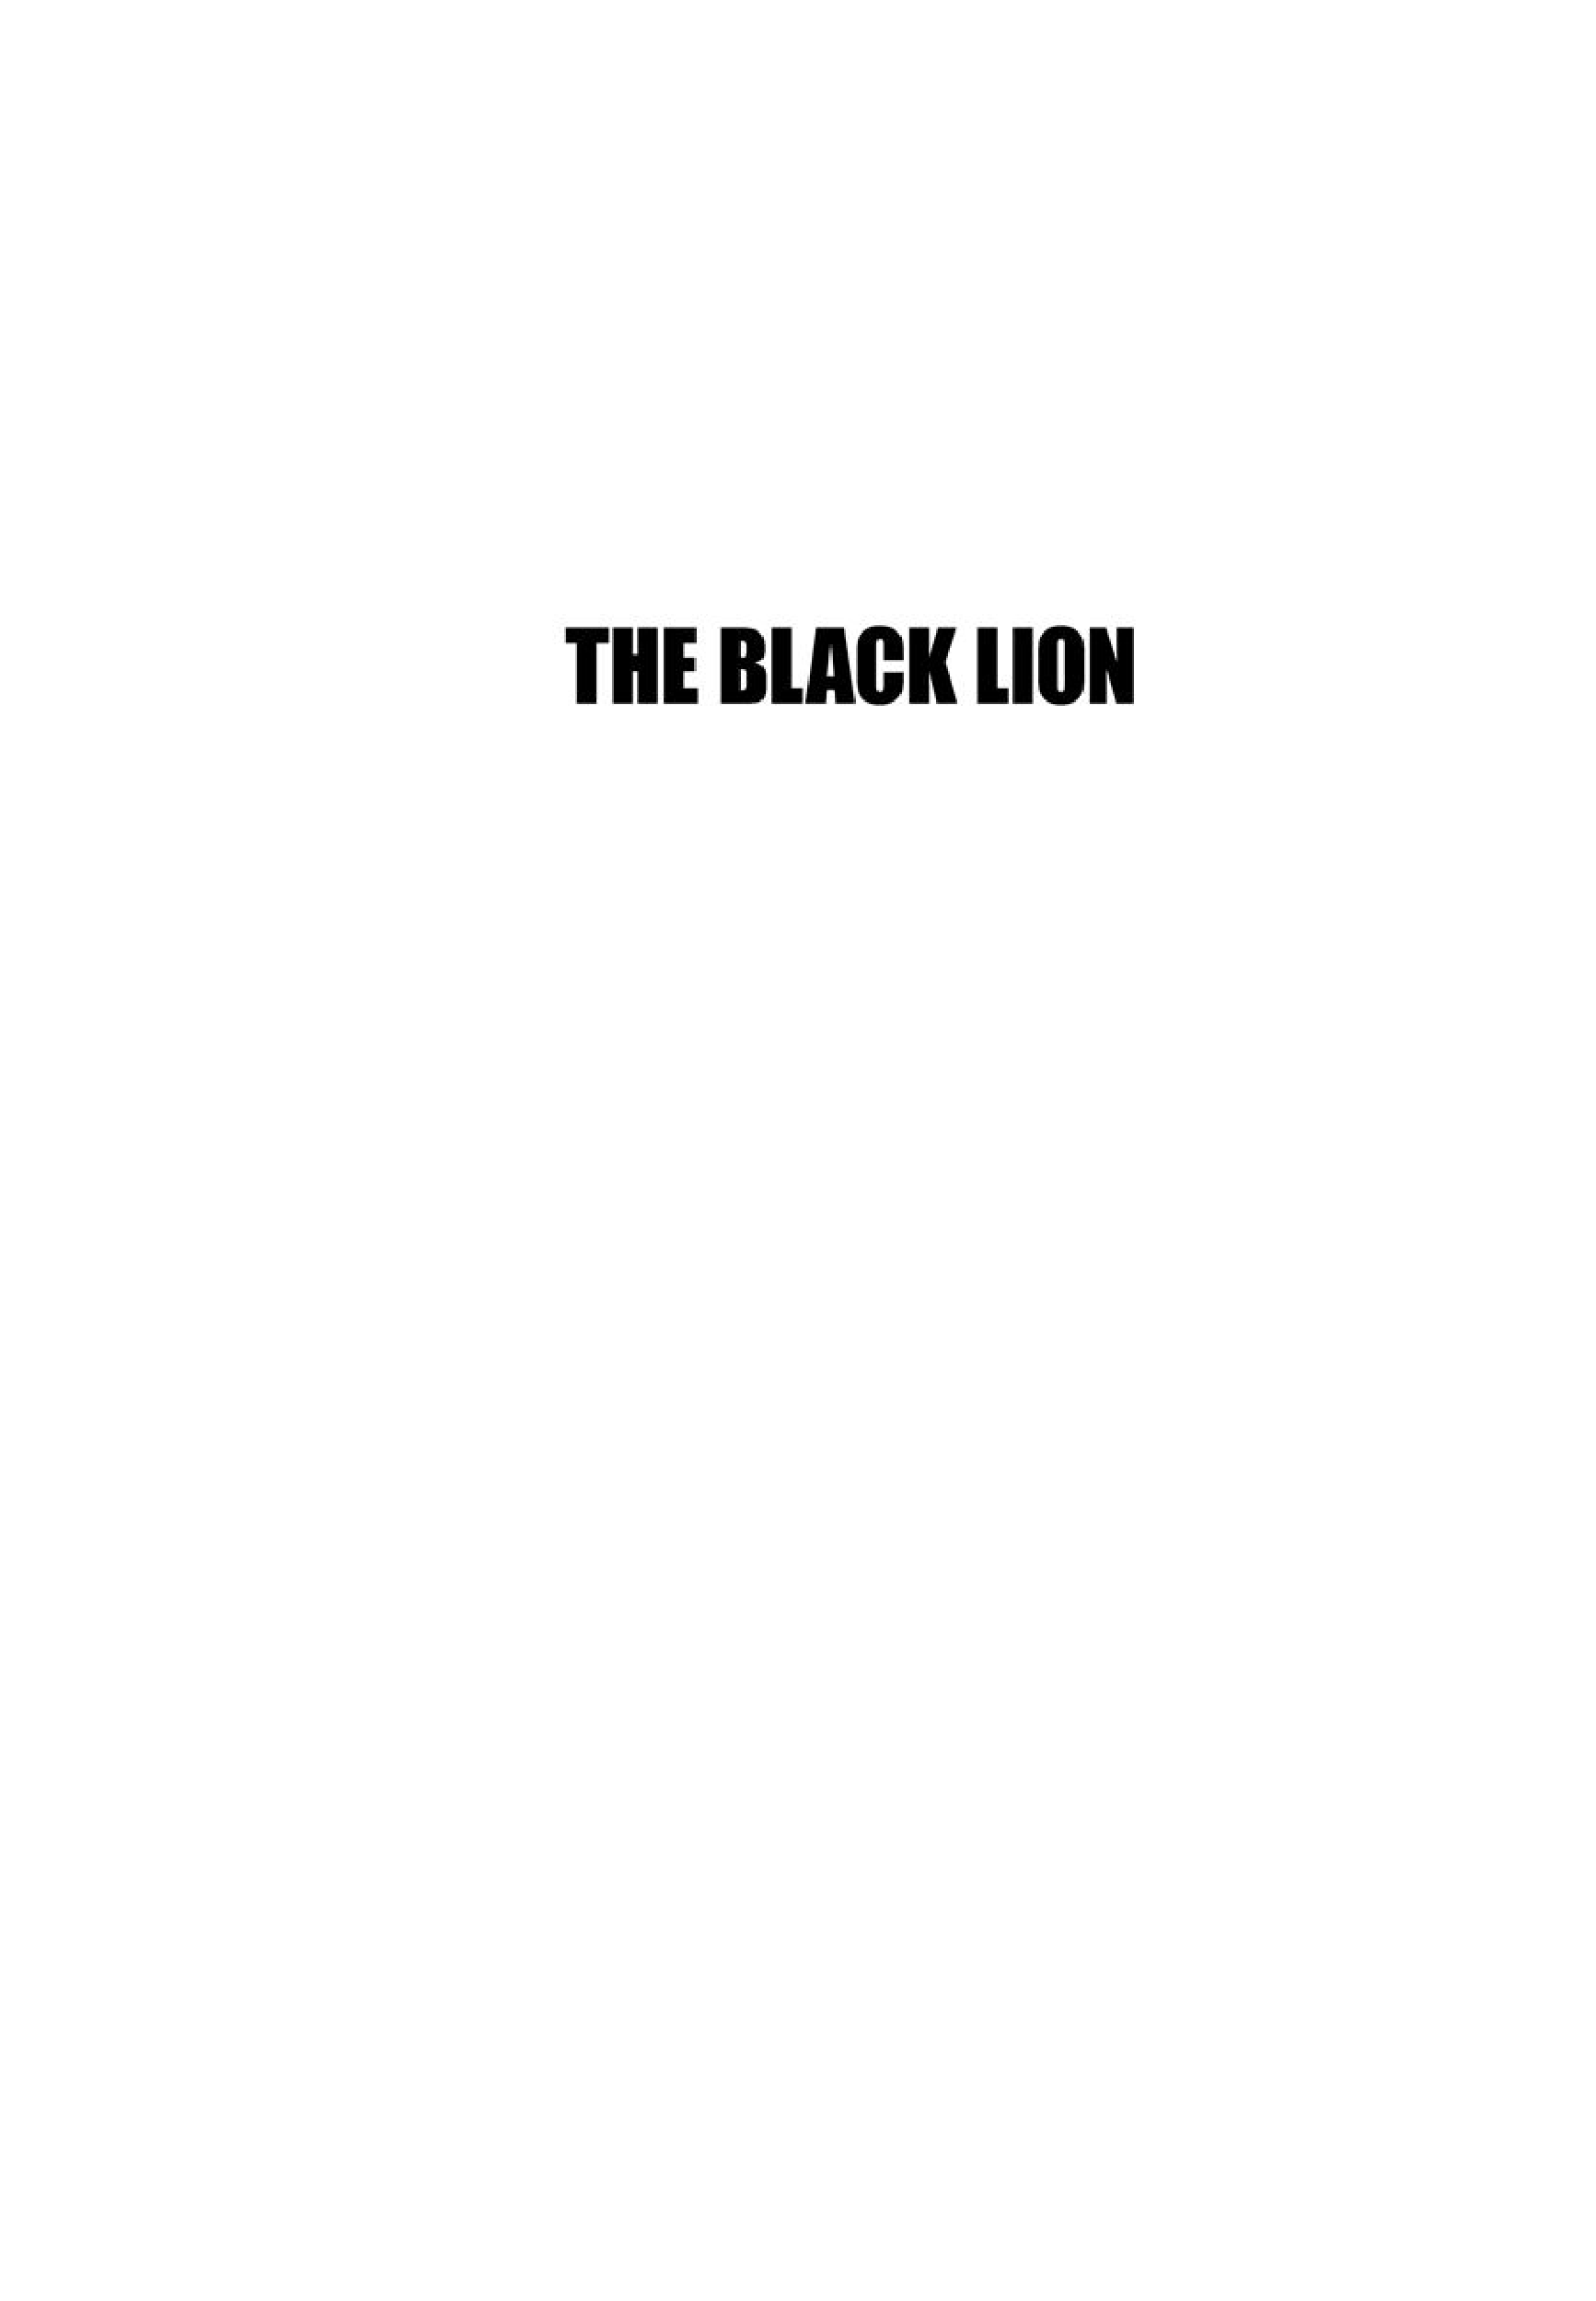 Leo The Lion Cub Vol.1 Chapter 12: The Black Lion - Picture 1